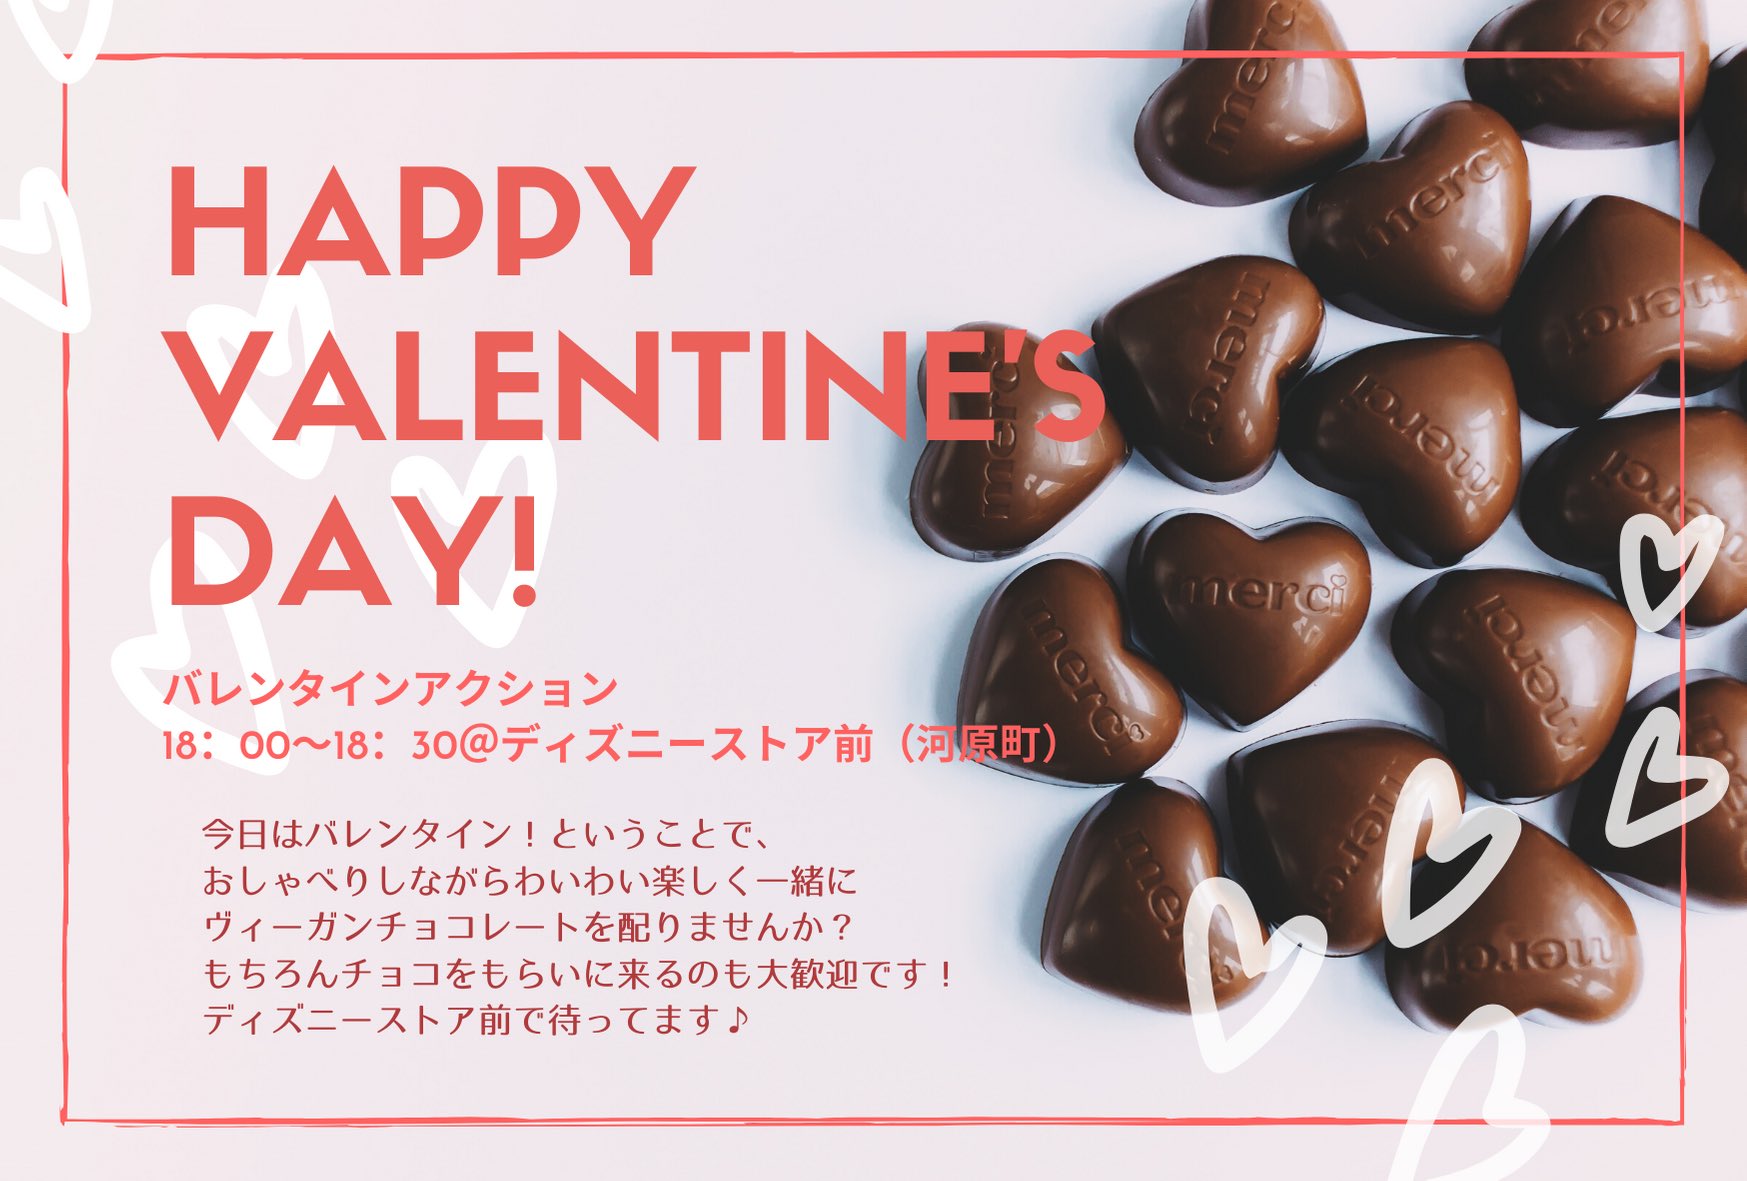 Fridays For Future Kyoto Na Twitterze 今日はバレンタインやし金曜日 ということで 一緒にバレンタインアクションしませんか 18 00 18 30 ディズニーストア前 河原町 でヴィーガンチョコレート配ってます 私たちとただお喋りしに来るだけも良し チョコもらい